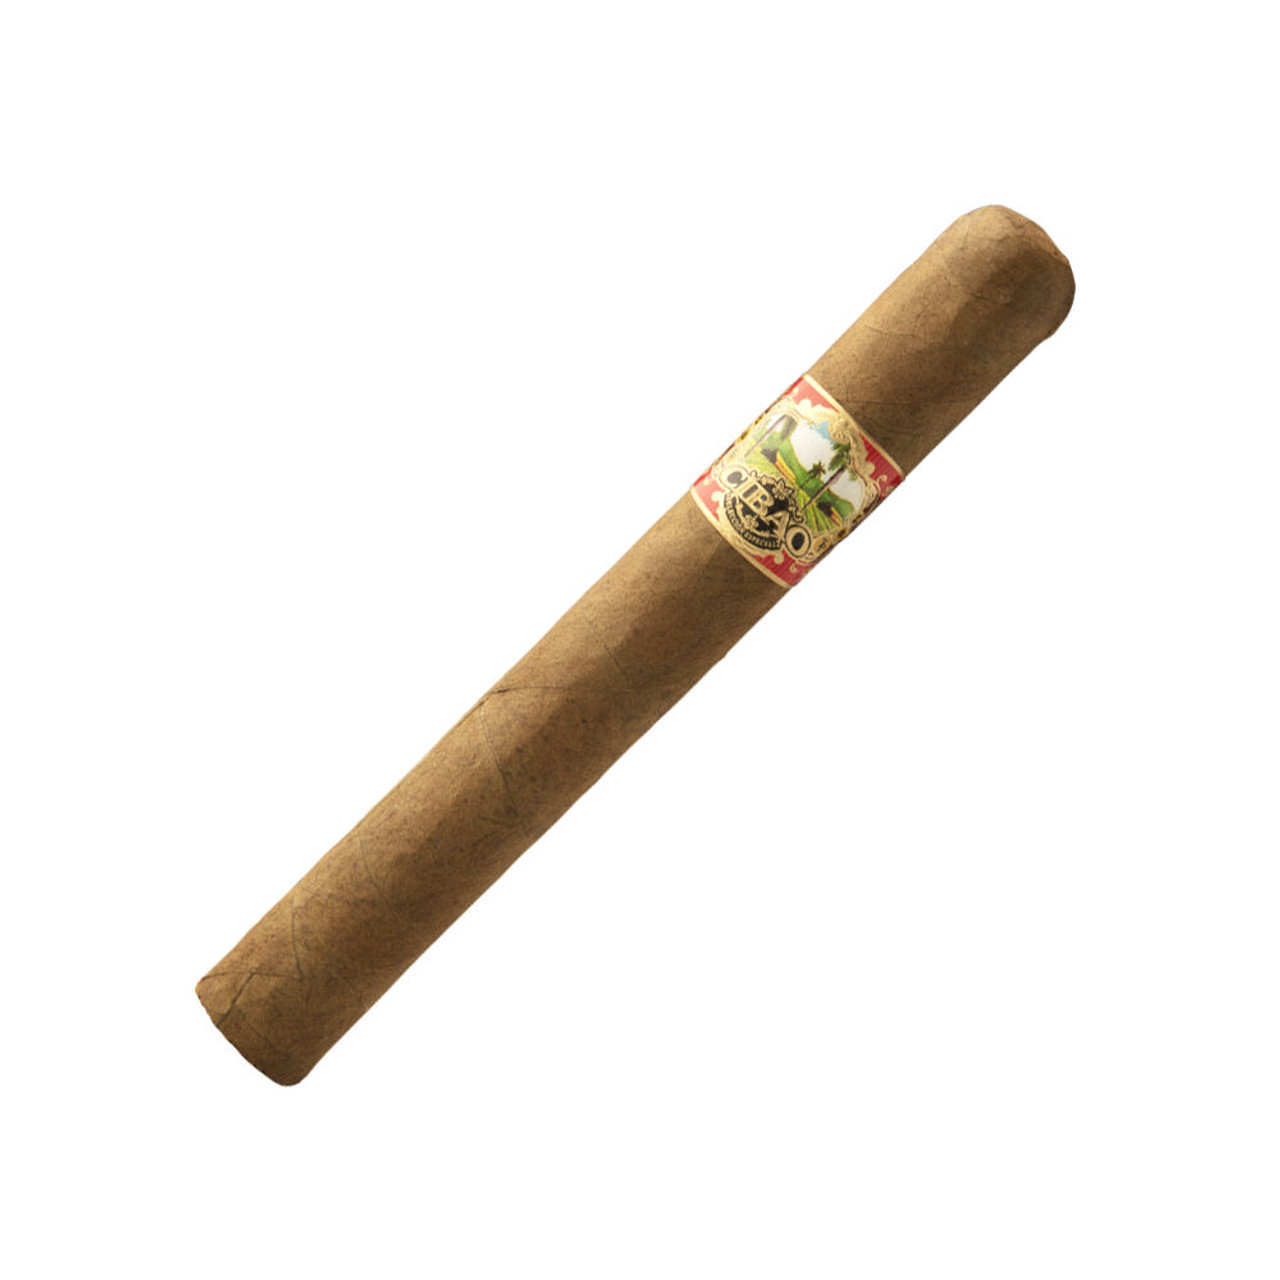 Cibao Seleccion Especial Corona Gorda Cigars - 5.88 x 46 Single